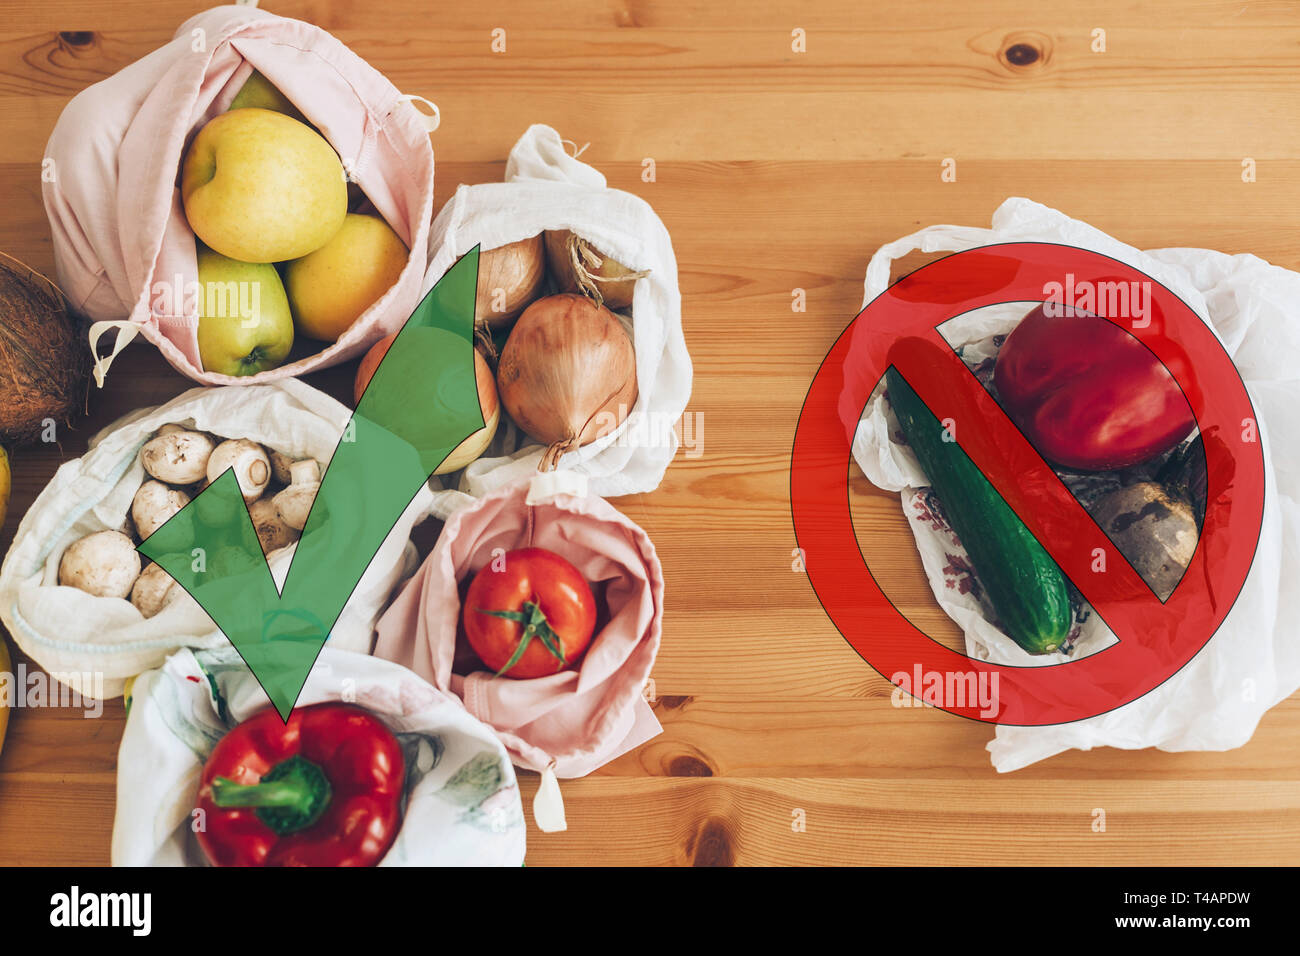 Verbot single use Kunststoff. Null Abfall shopping Konzept. Frische Lebensmittel in wiederverwendbaren eco Taschen und Gemüse in Kunststoff Polyethylen Beutel auf Holztisch. Stockfoto